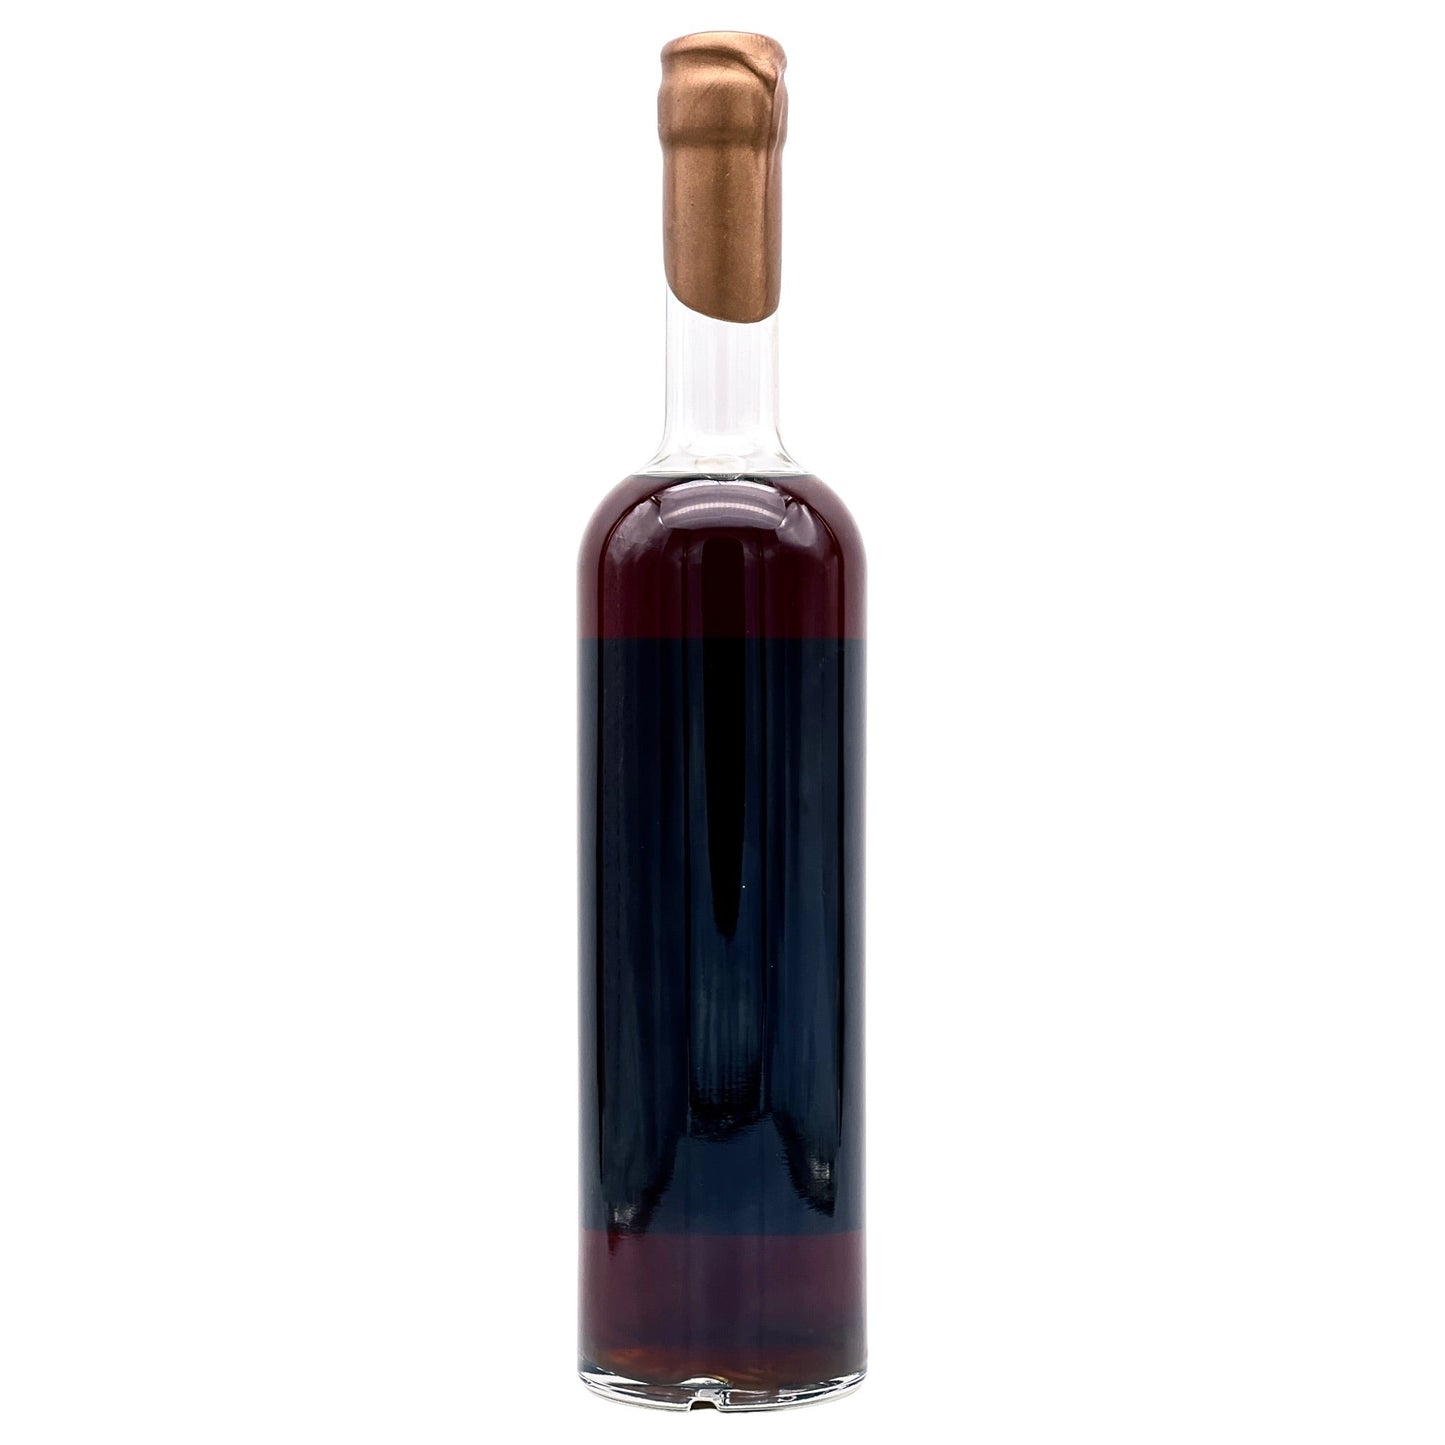 Reservoir | Maison du Cuivre | Wine Cask | Bourbon | 0,75l | 50%GET A BOTTLE